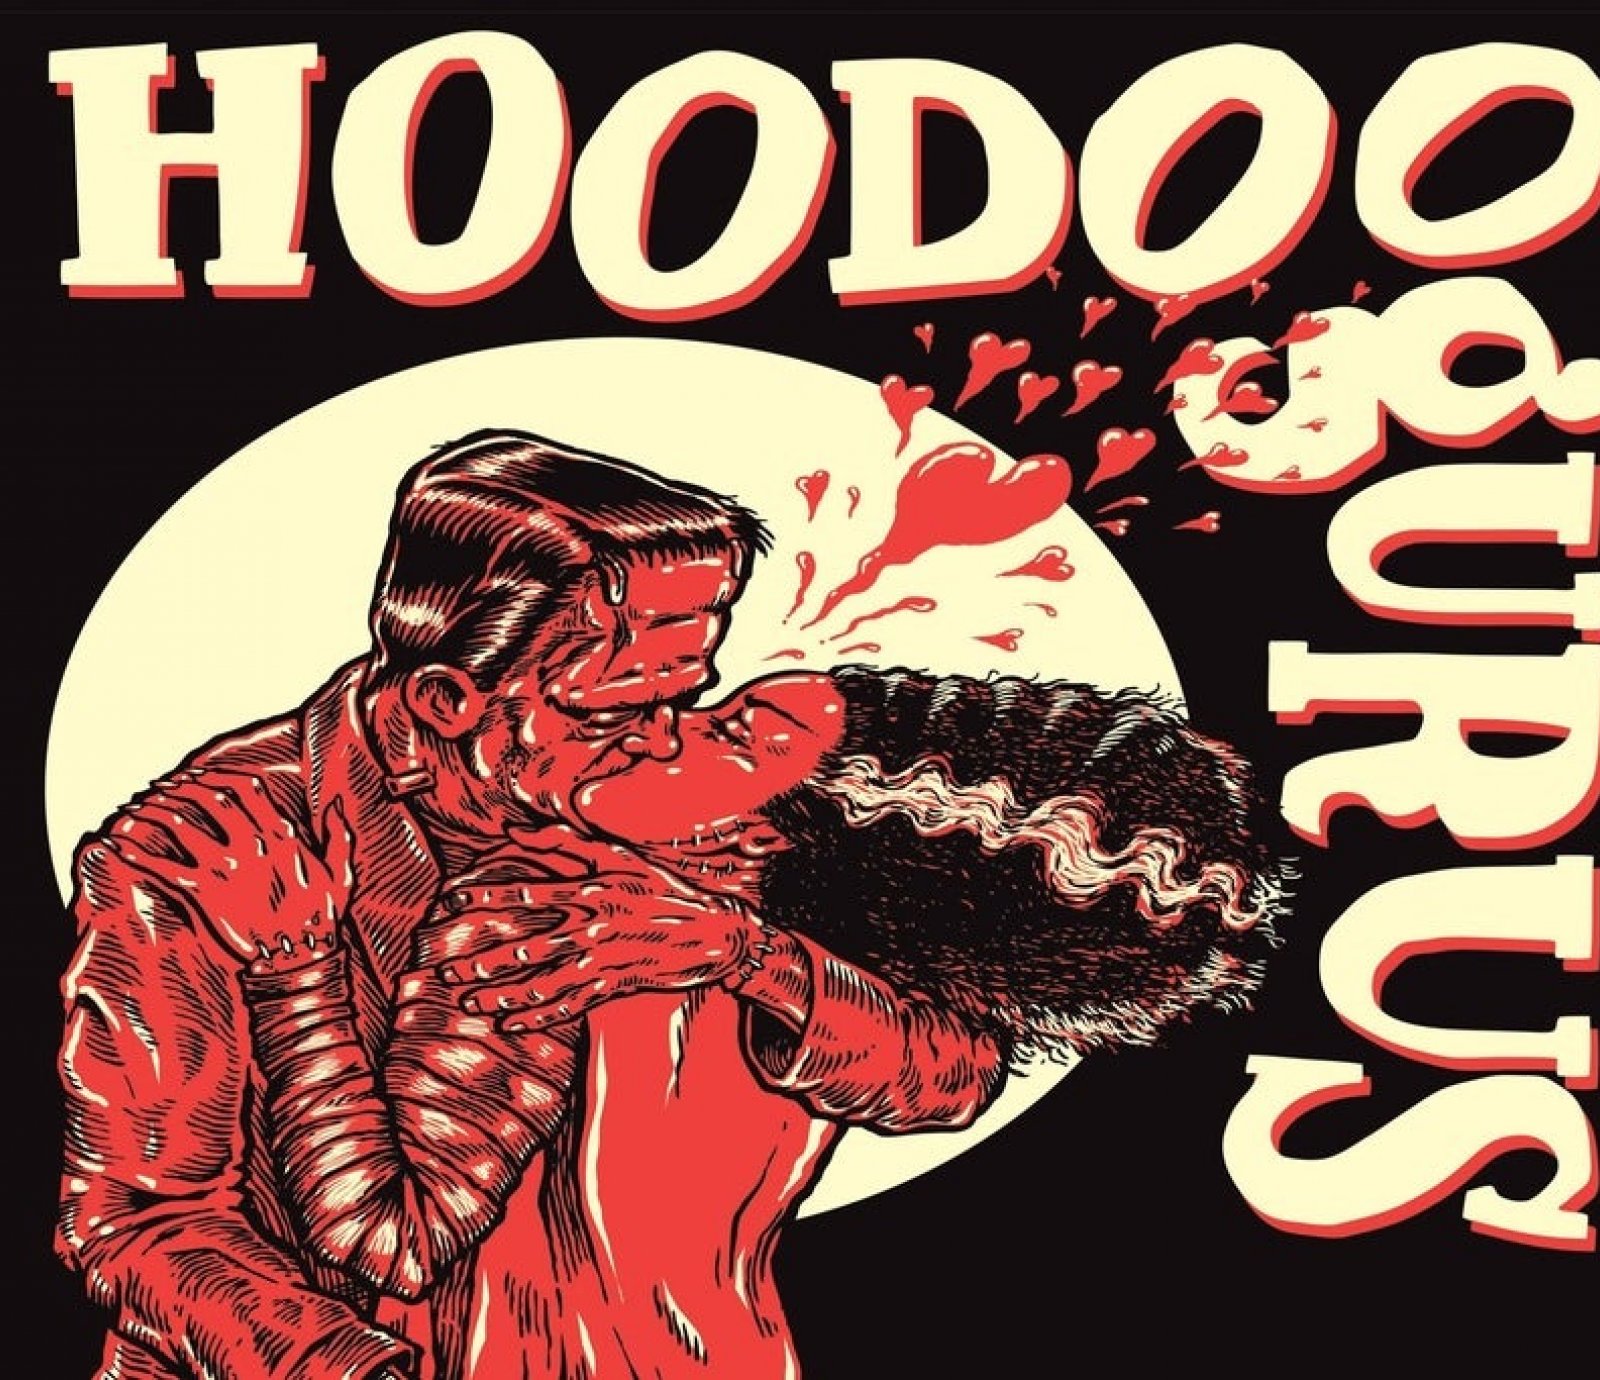 hoodoo gurus 40th anniversary tour